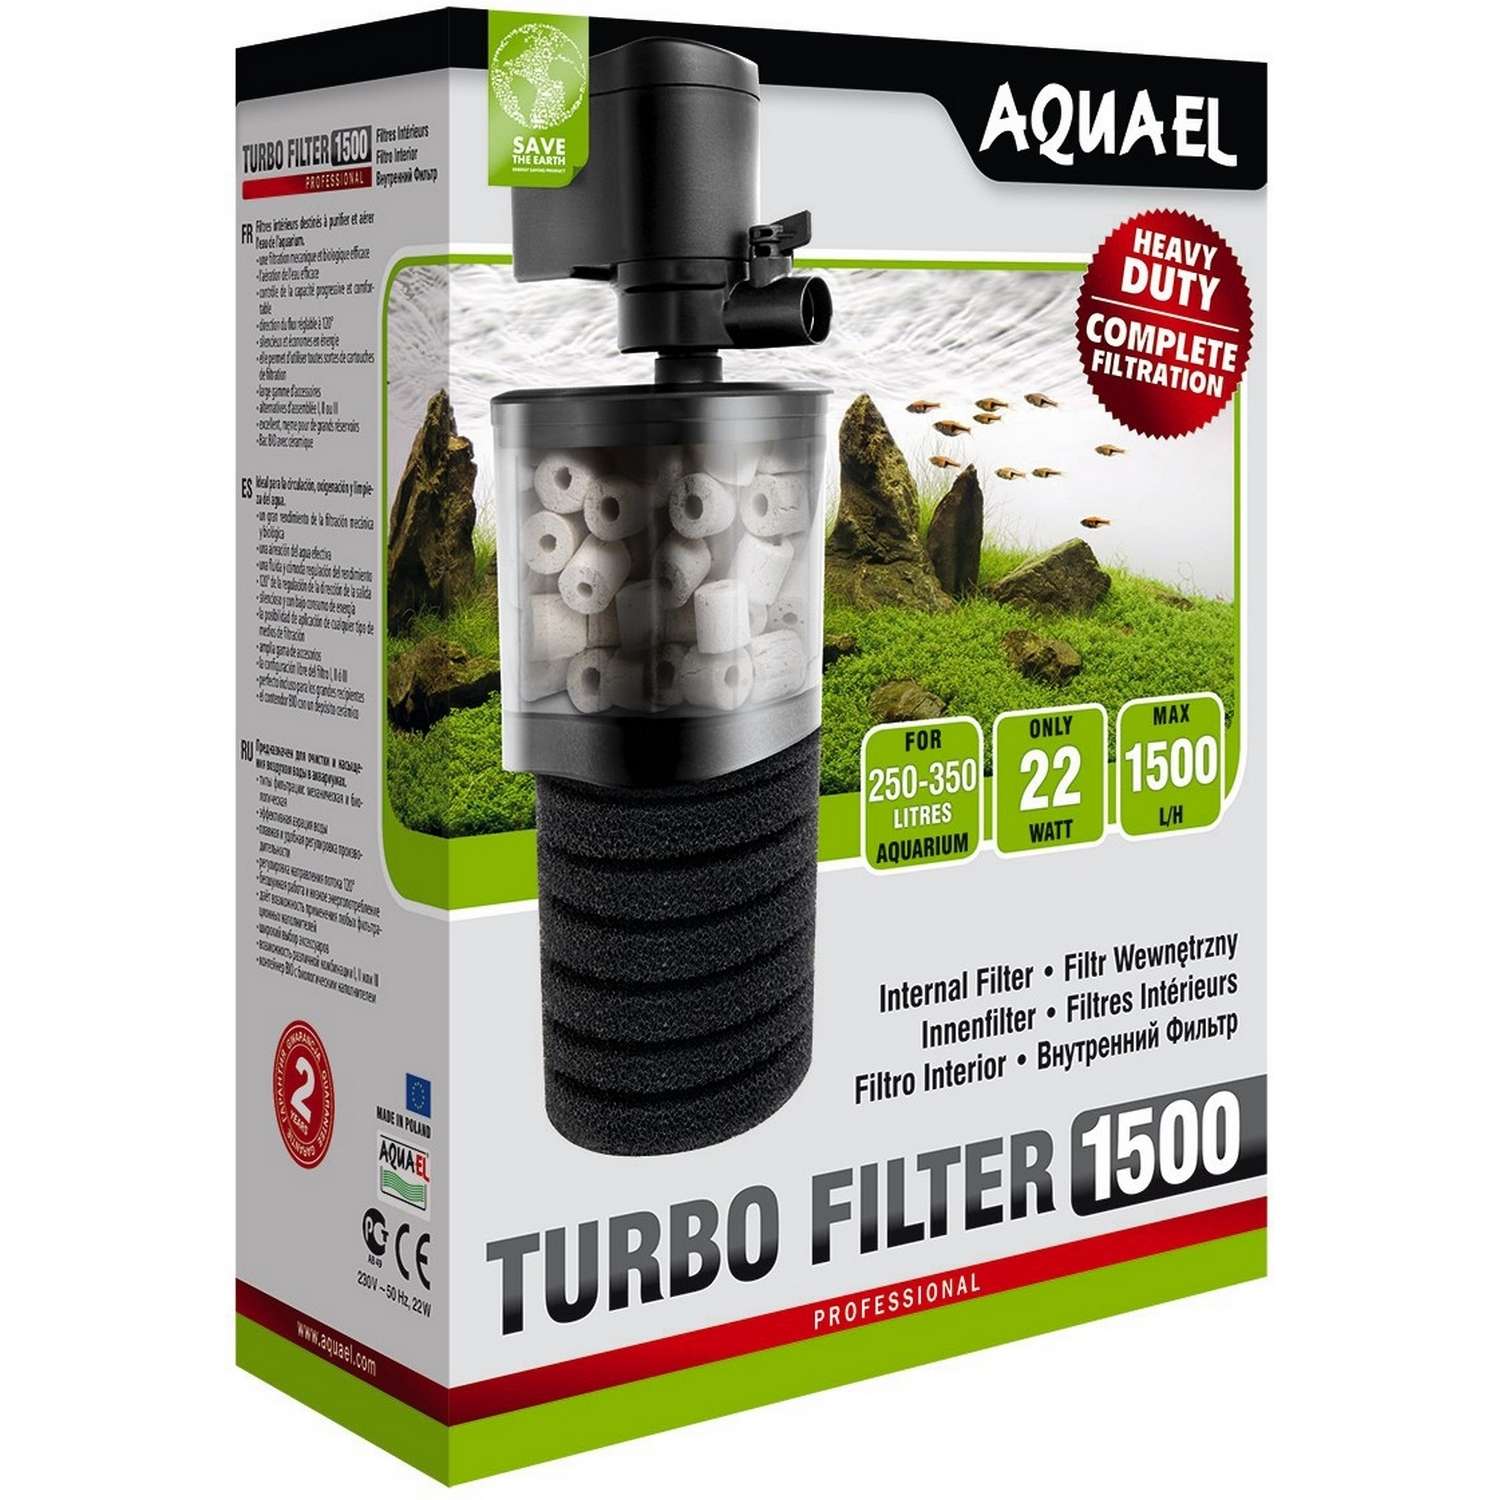 Фильтр для аквариумов AQUAEL Turbo Filter 1500 внутренний 109404 - фото 2